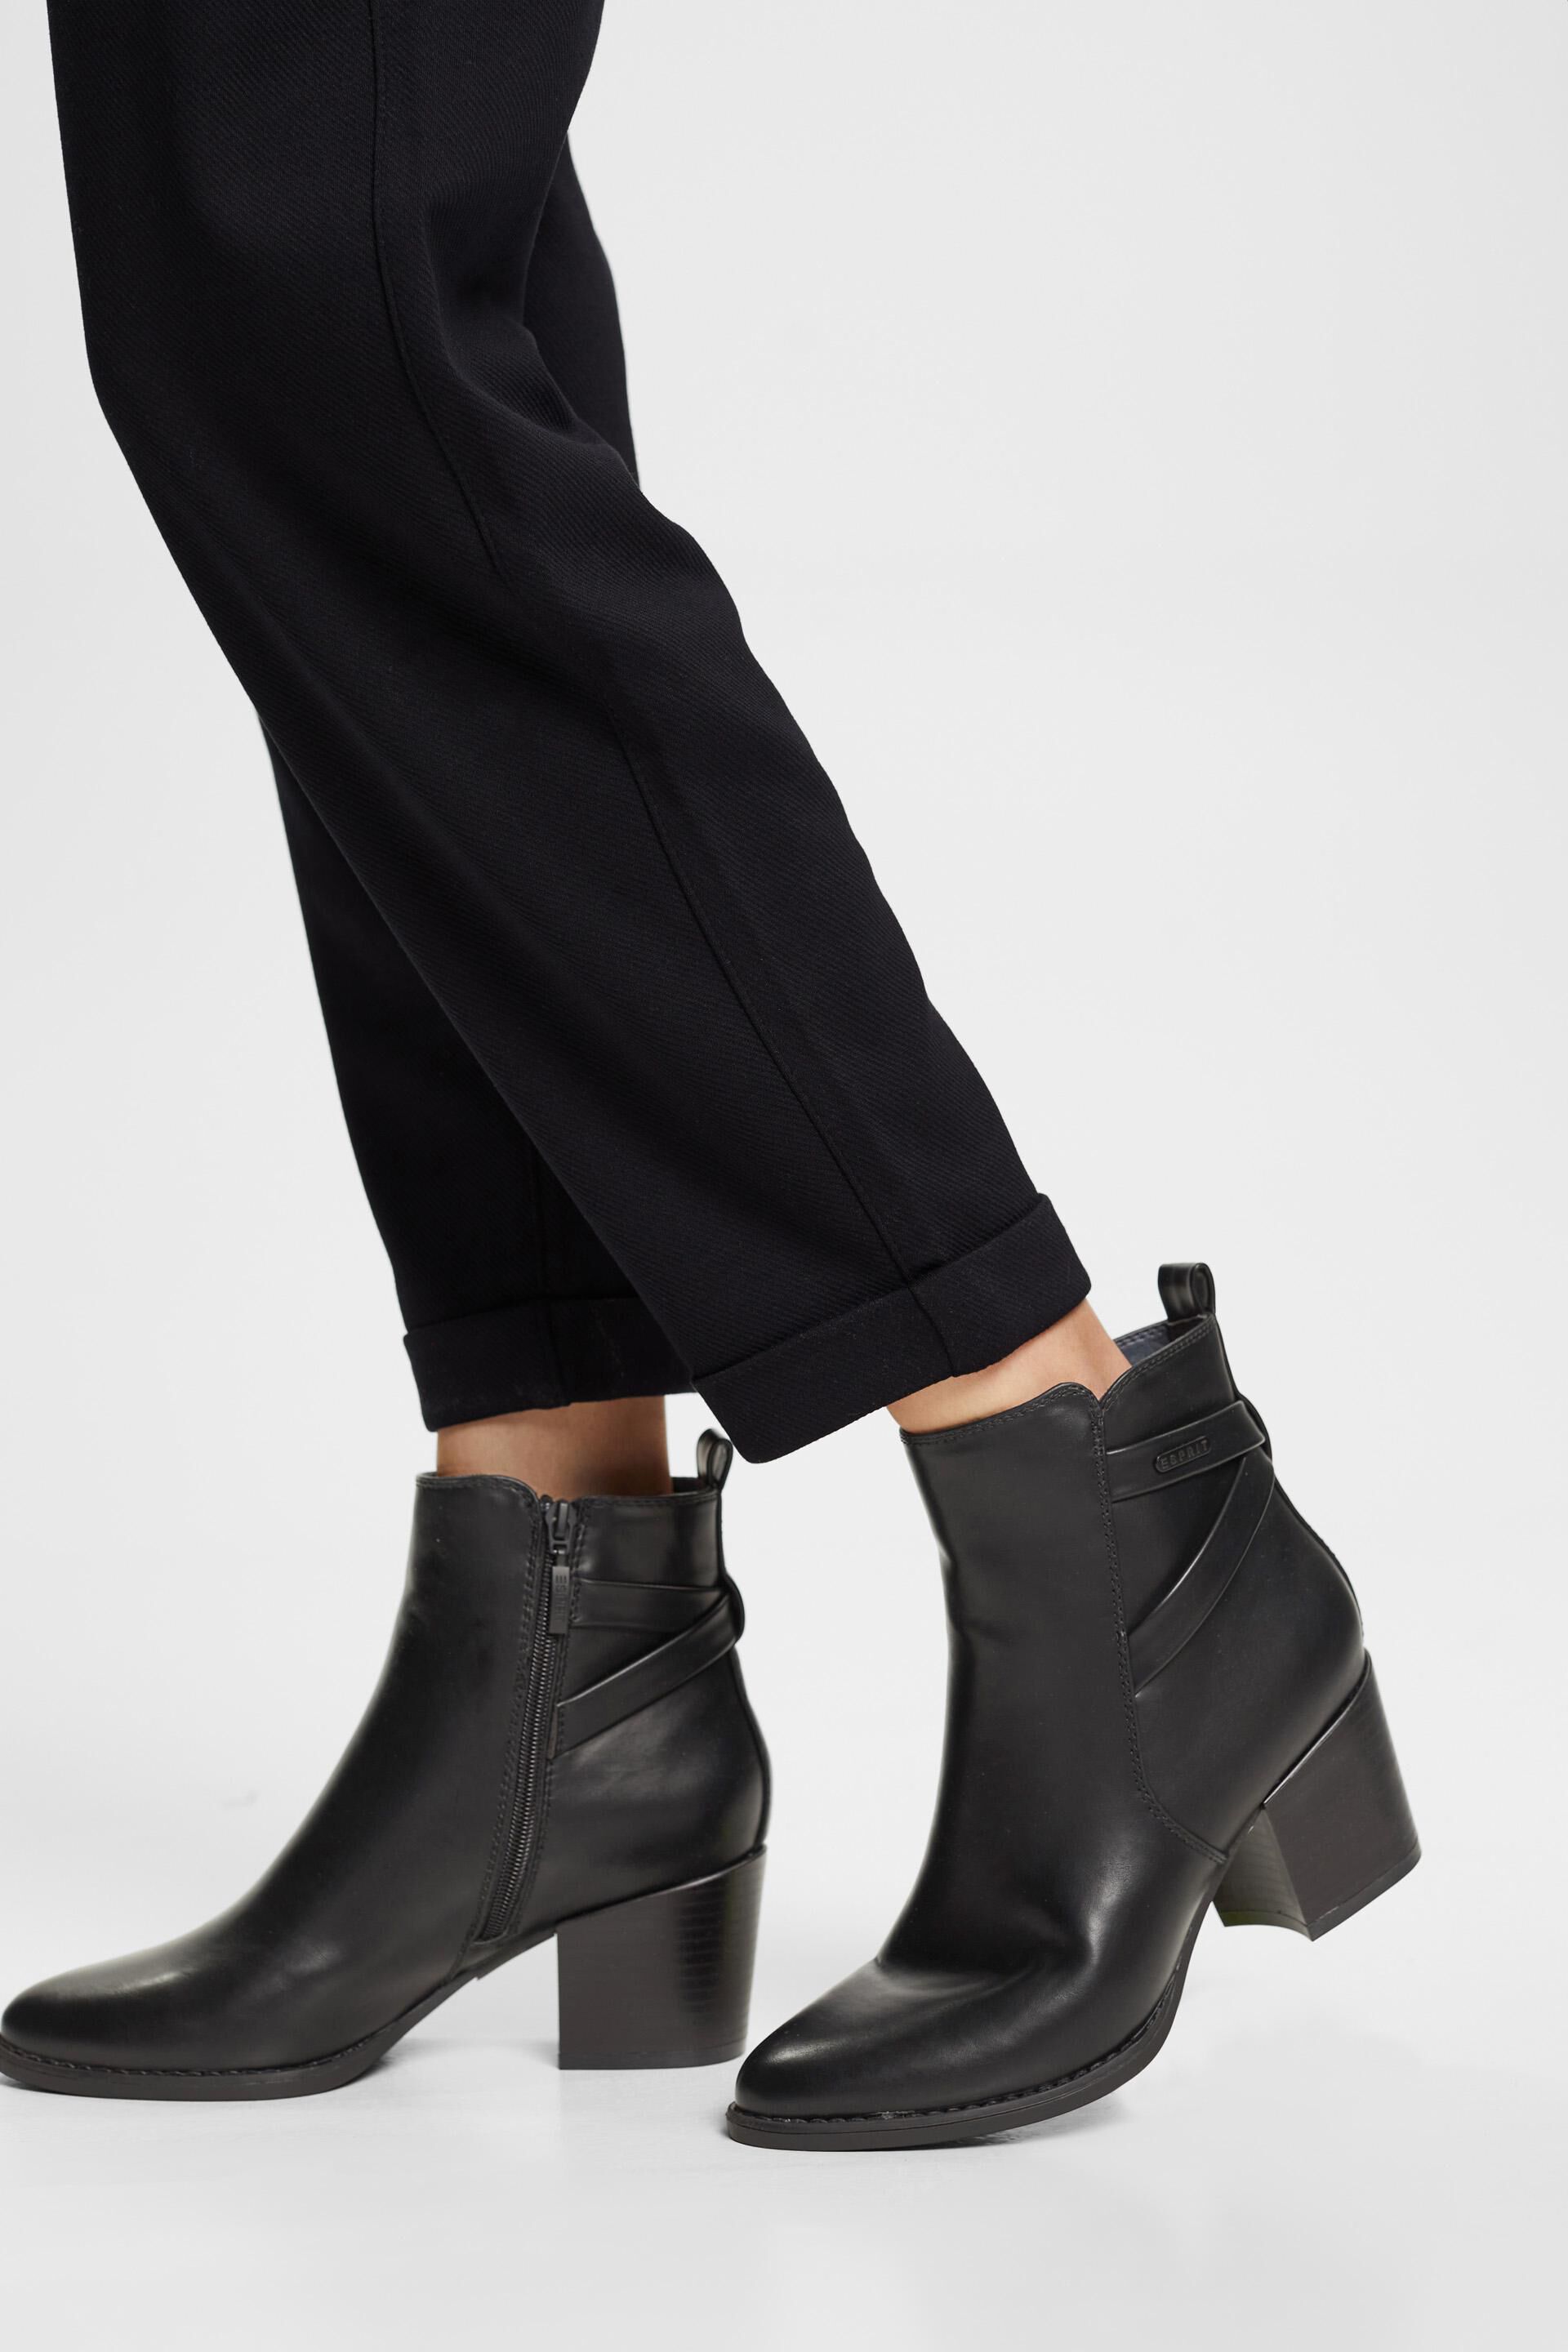 Zapatos de Ante para de Esprit de color Negro Mujer Zapatos de Botas de Botas con cuña 